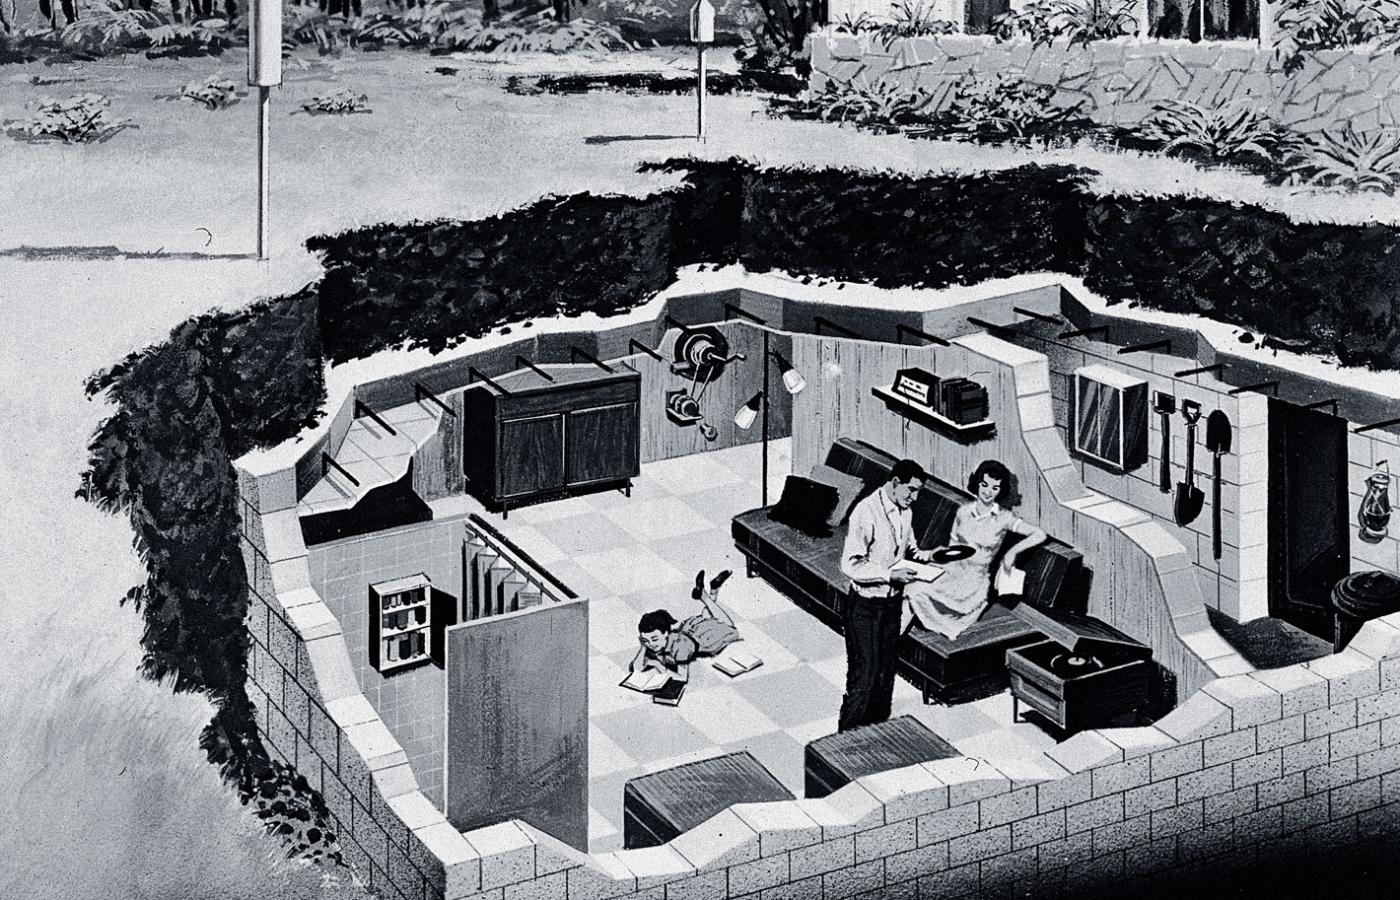 Prospekt podziemnego schronu przeciwatomowego, USA, wczesne lata 60.